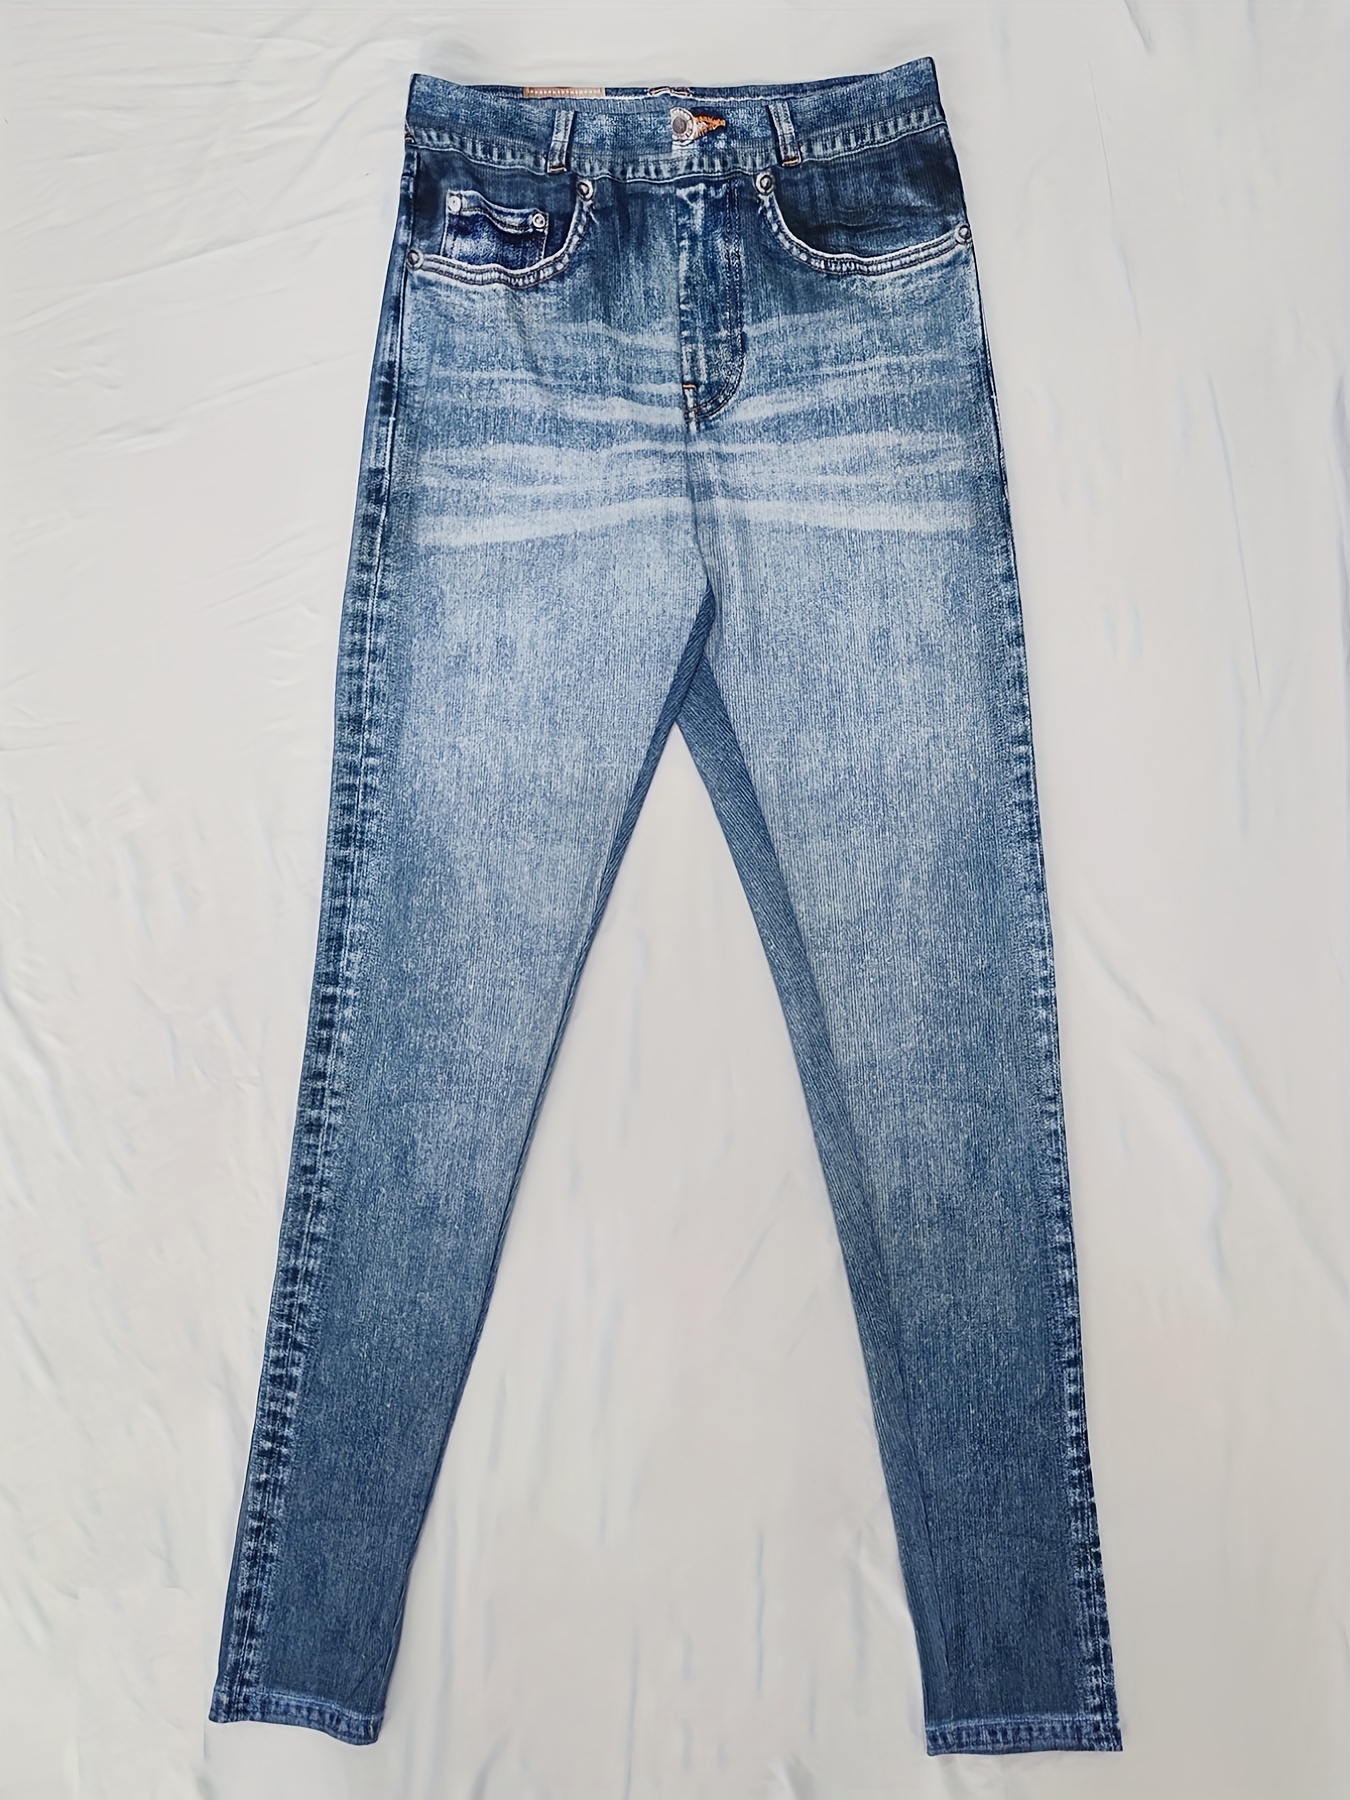 Leggings Jeans for Women Denim Pants with Pocket Slim Jeggings Fitness  PluSize Leggings S-XXL Black/Blue 